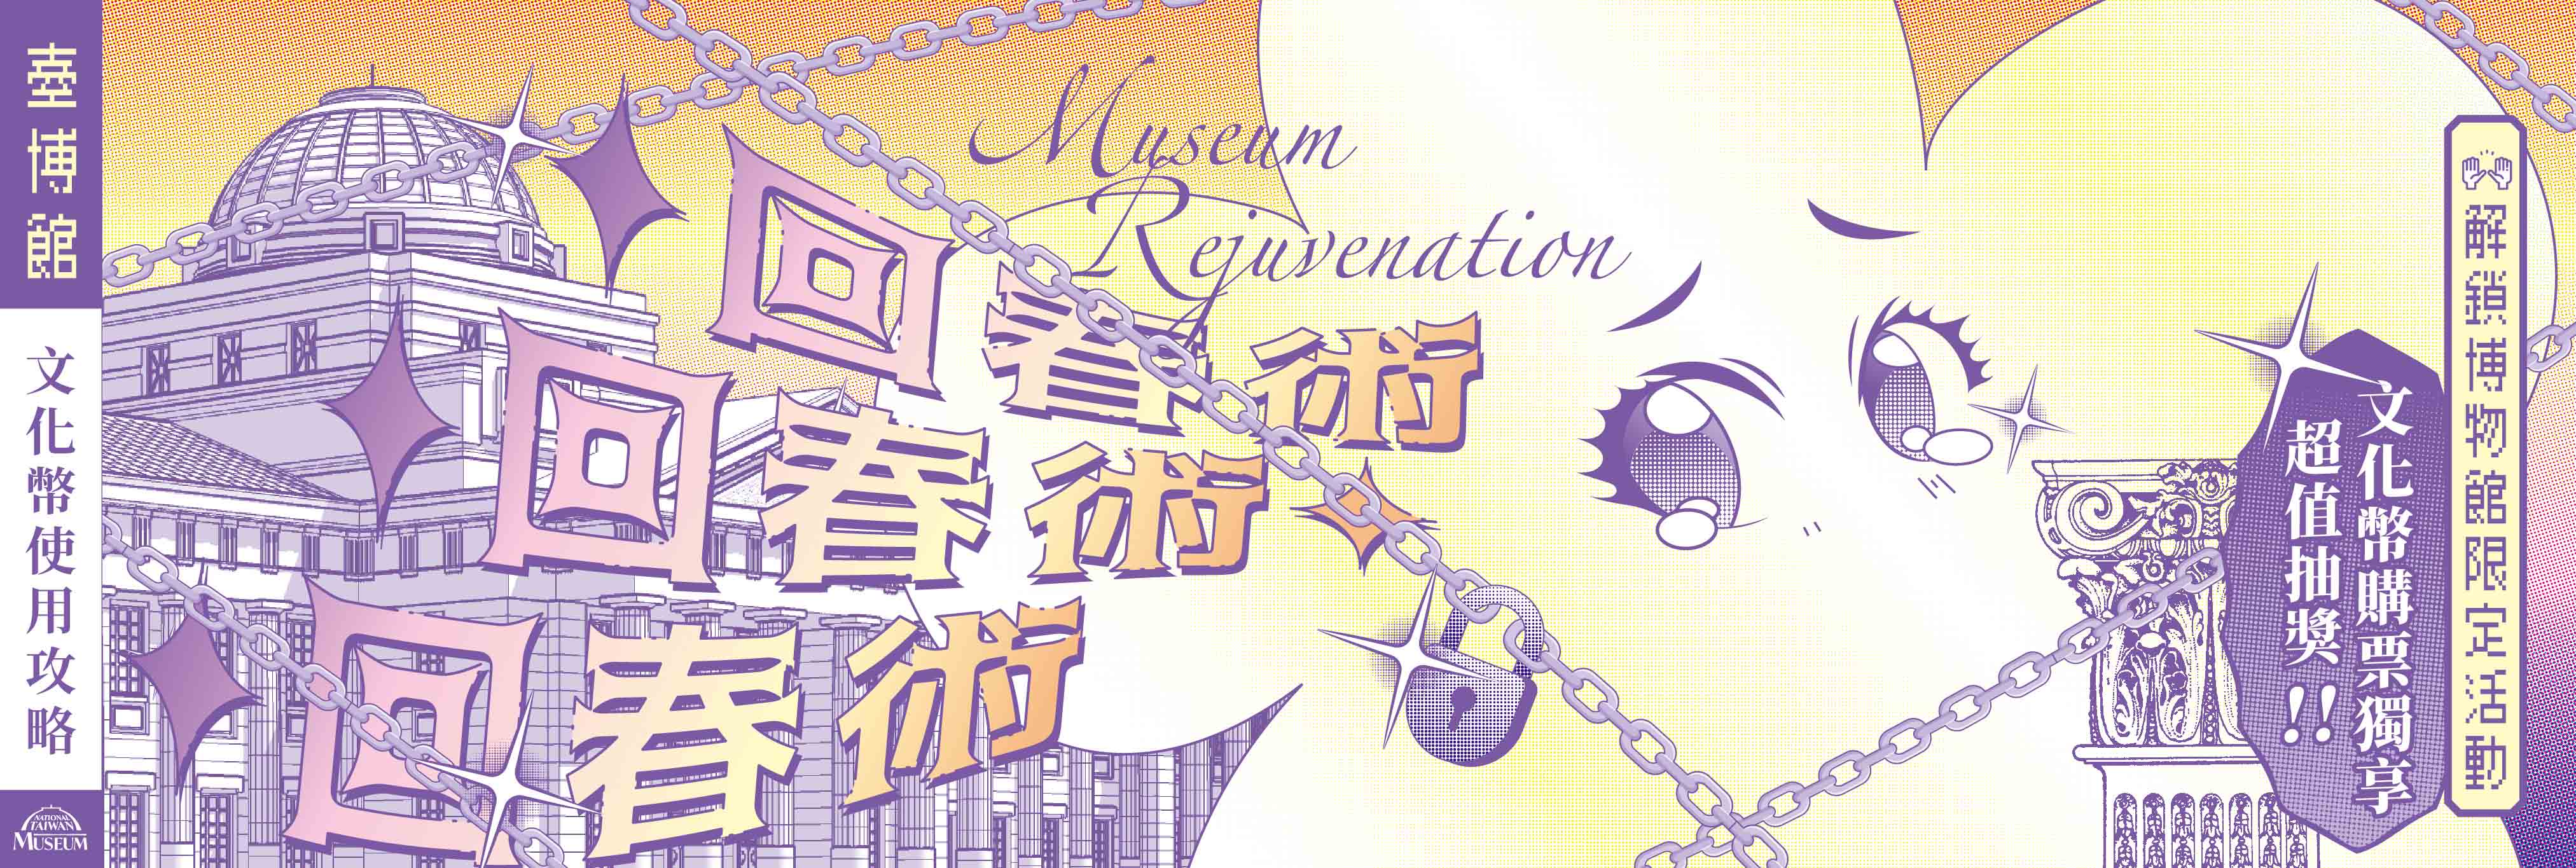 「博物館回春術」16-22歲文化幣購票抽獎及體驗活動